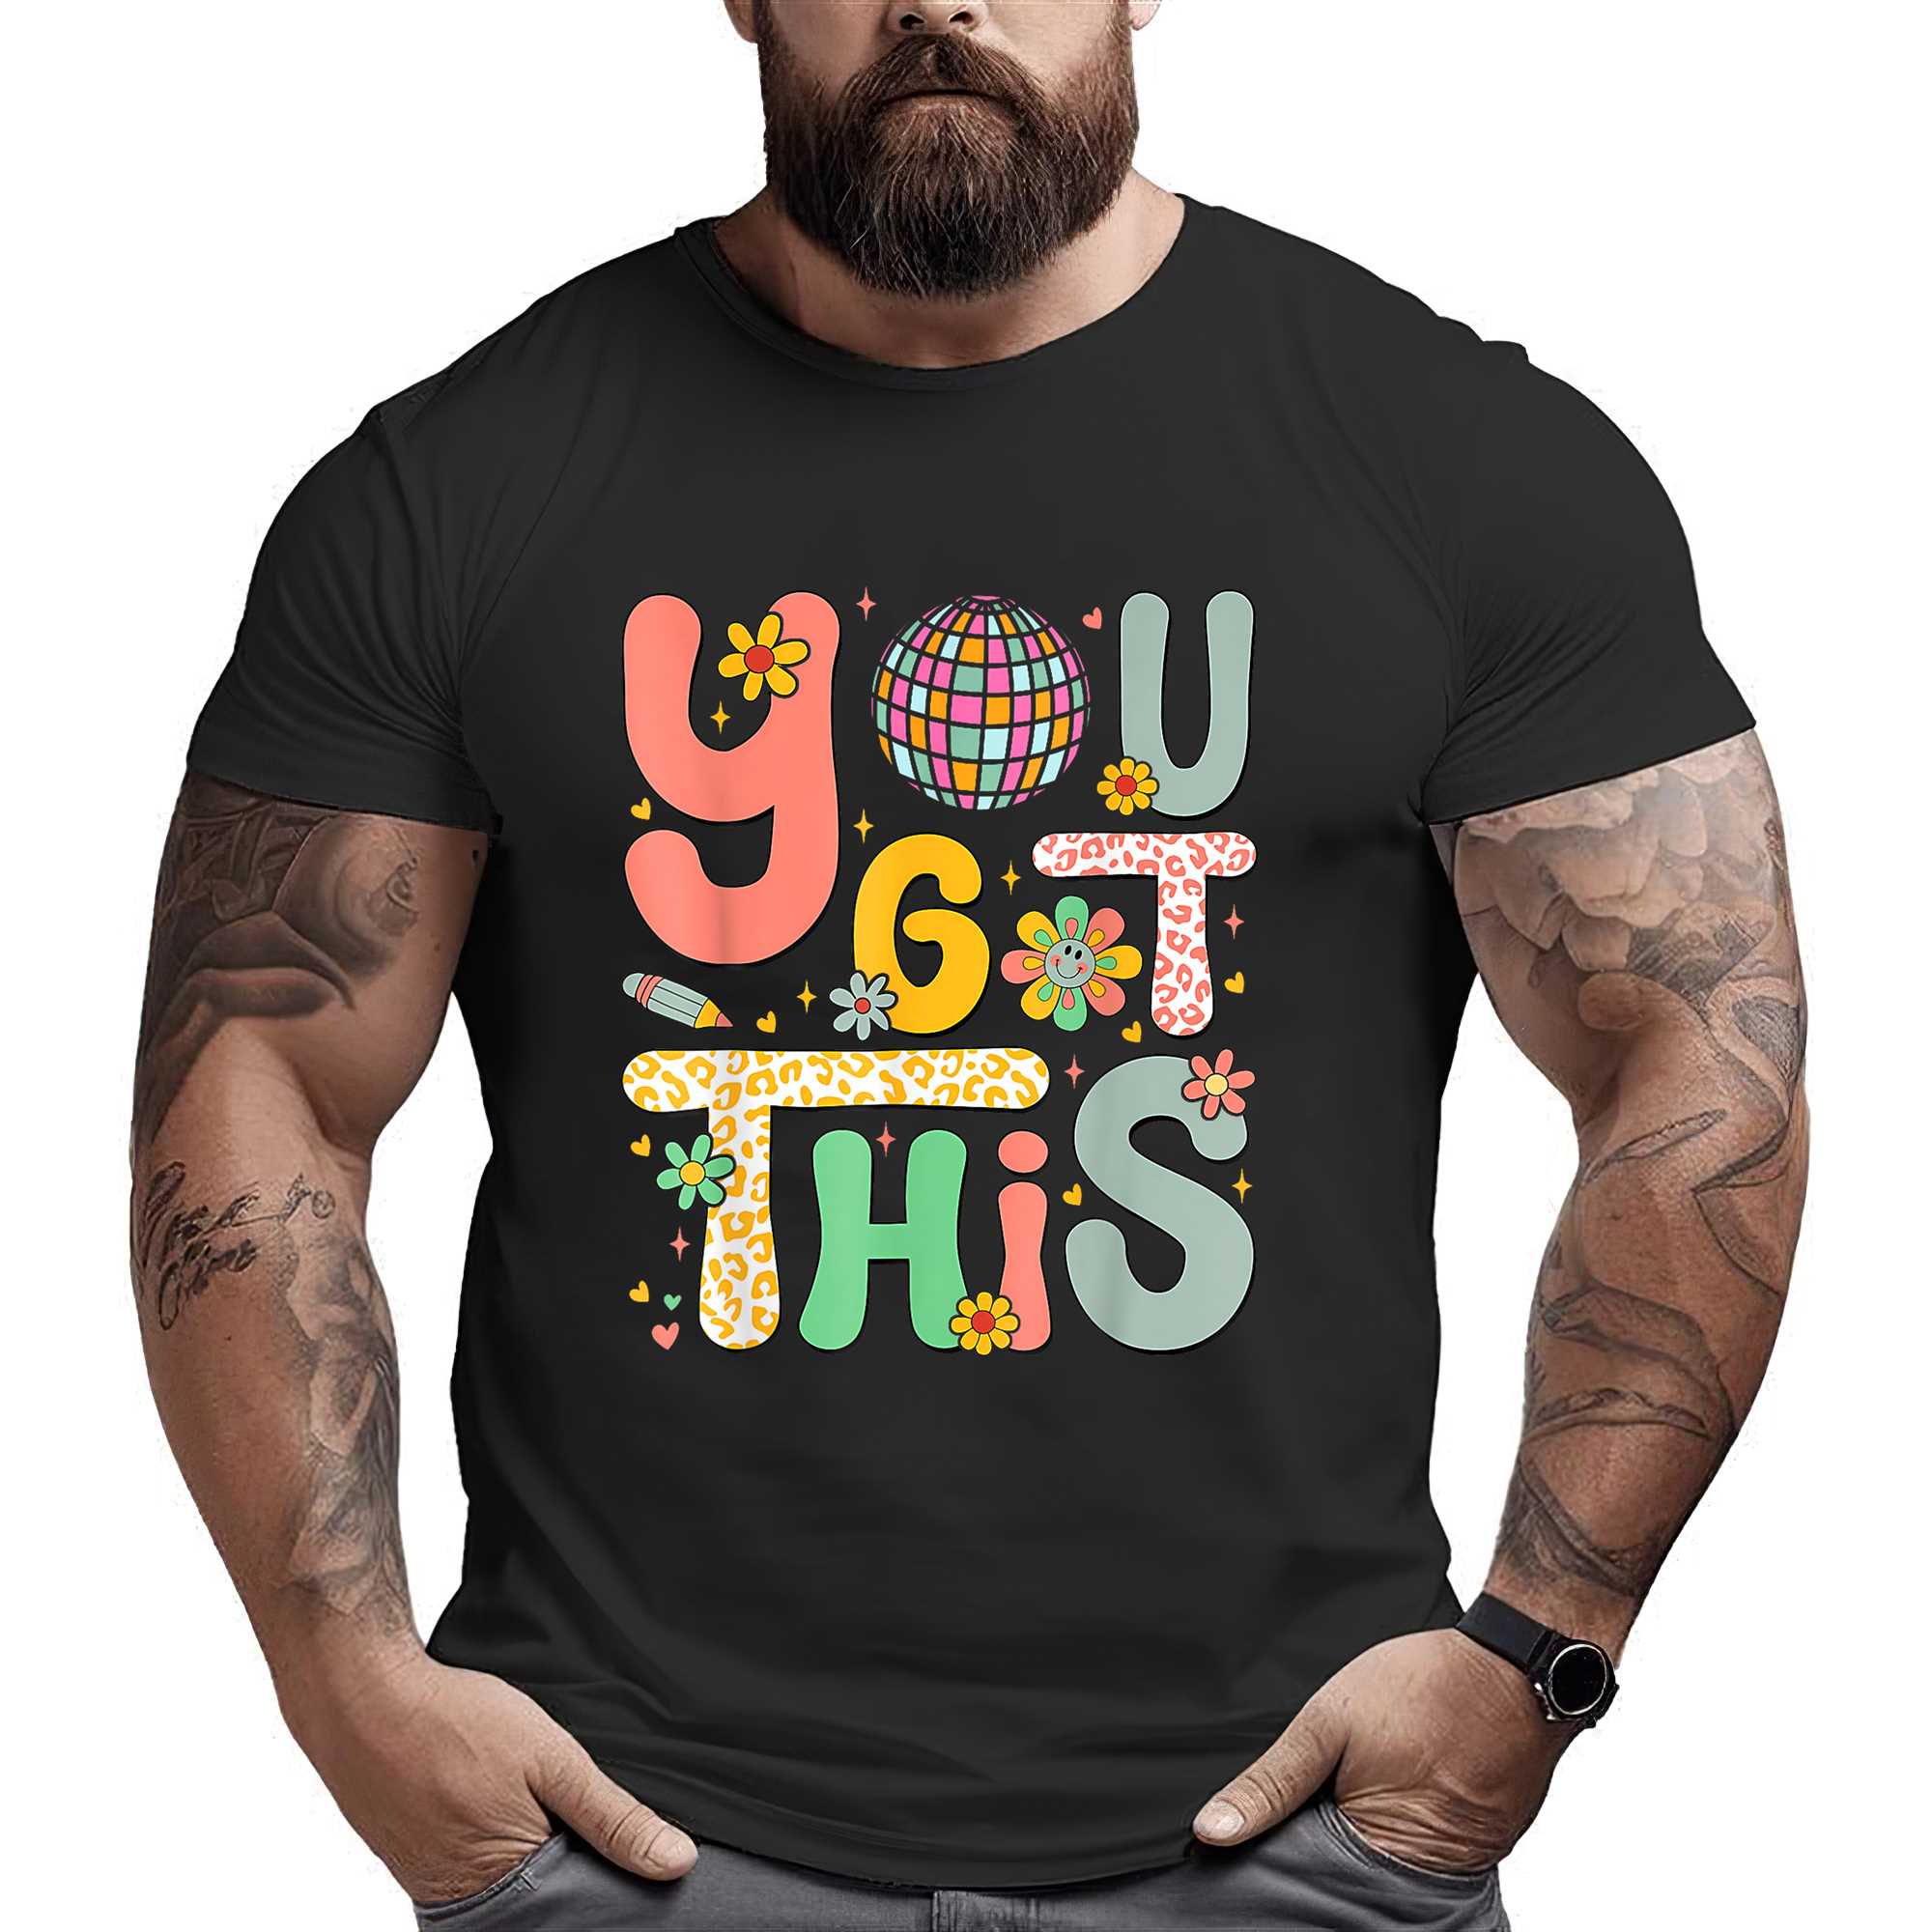 Motivational Testing Day Shirt Teacher Student You Got This T-shirt